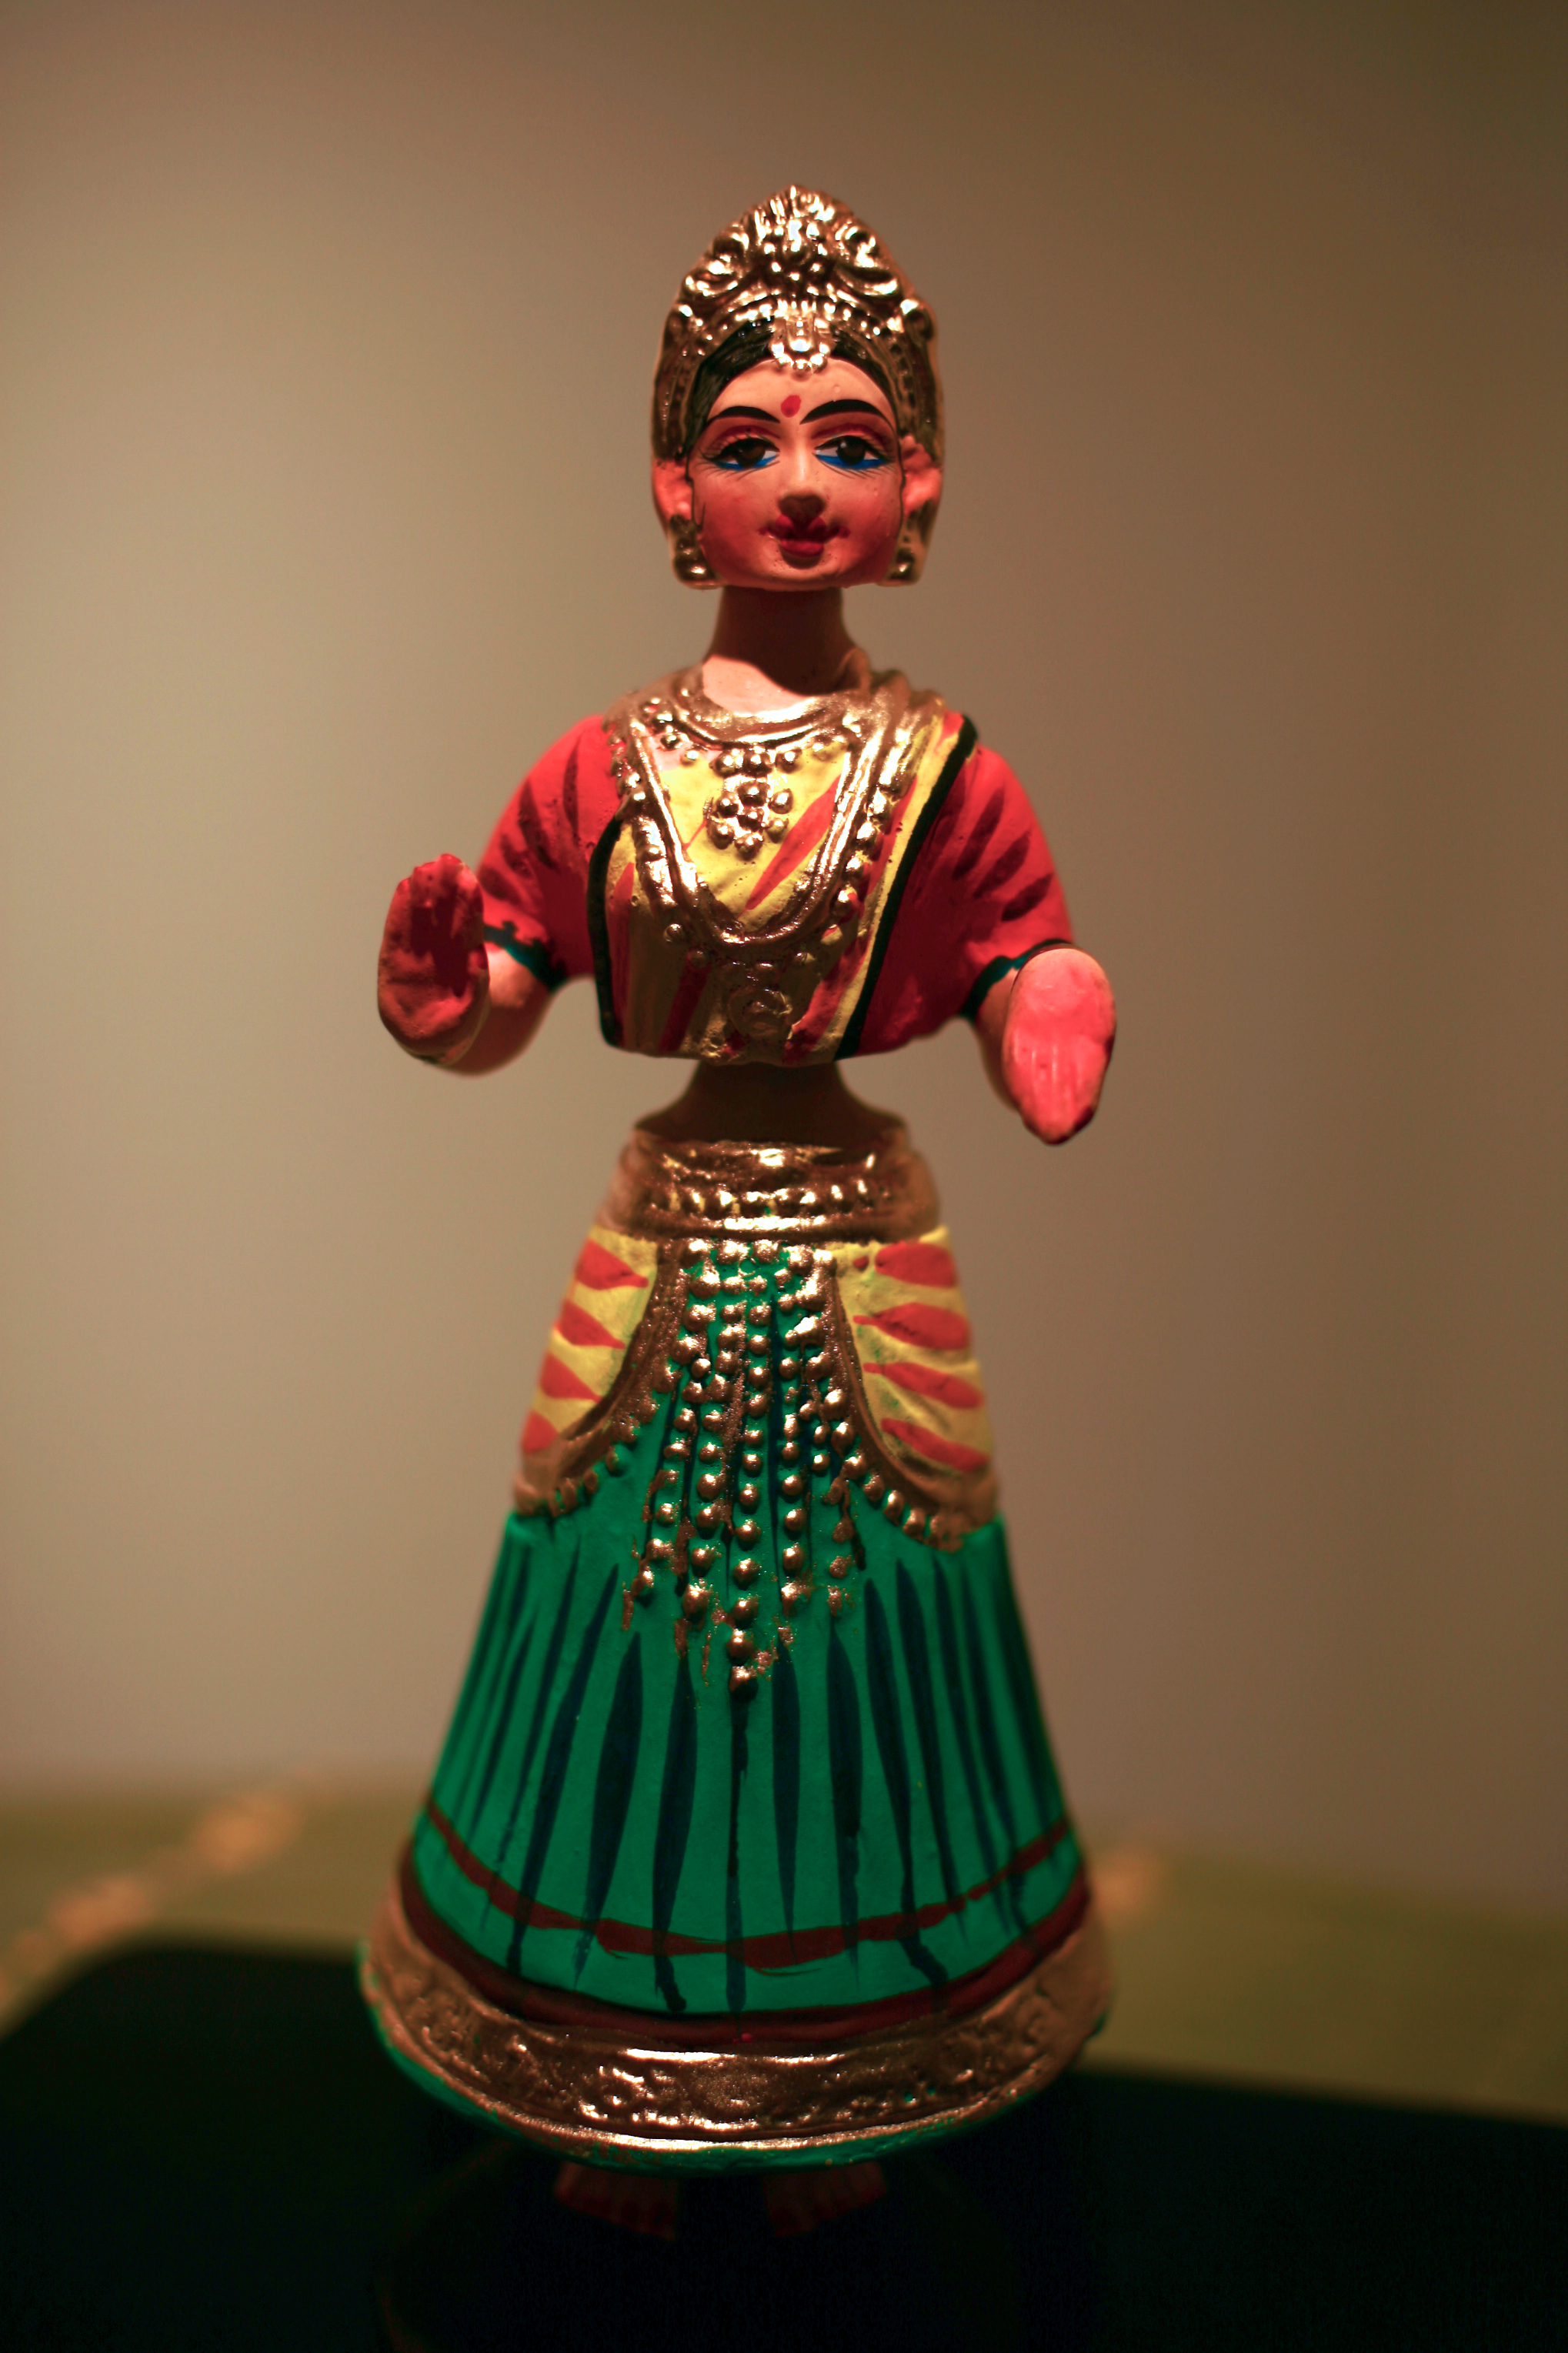 A Tanjavur doll. (Alamelu Sankaranarayanan/CC BY-SA)